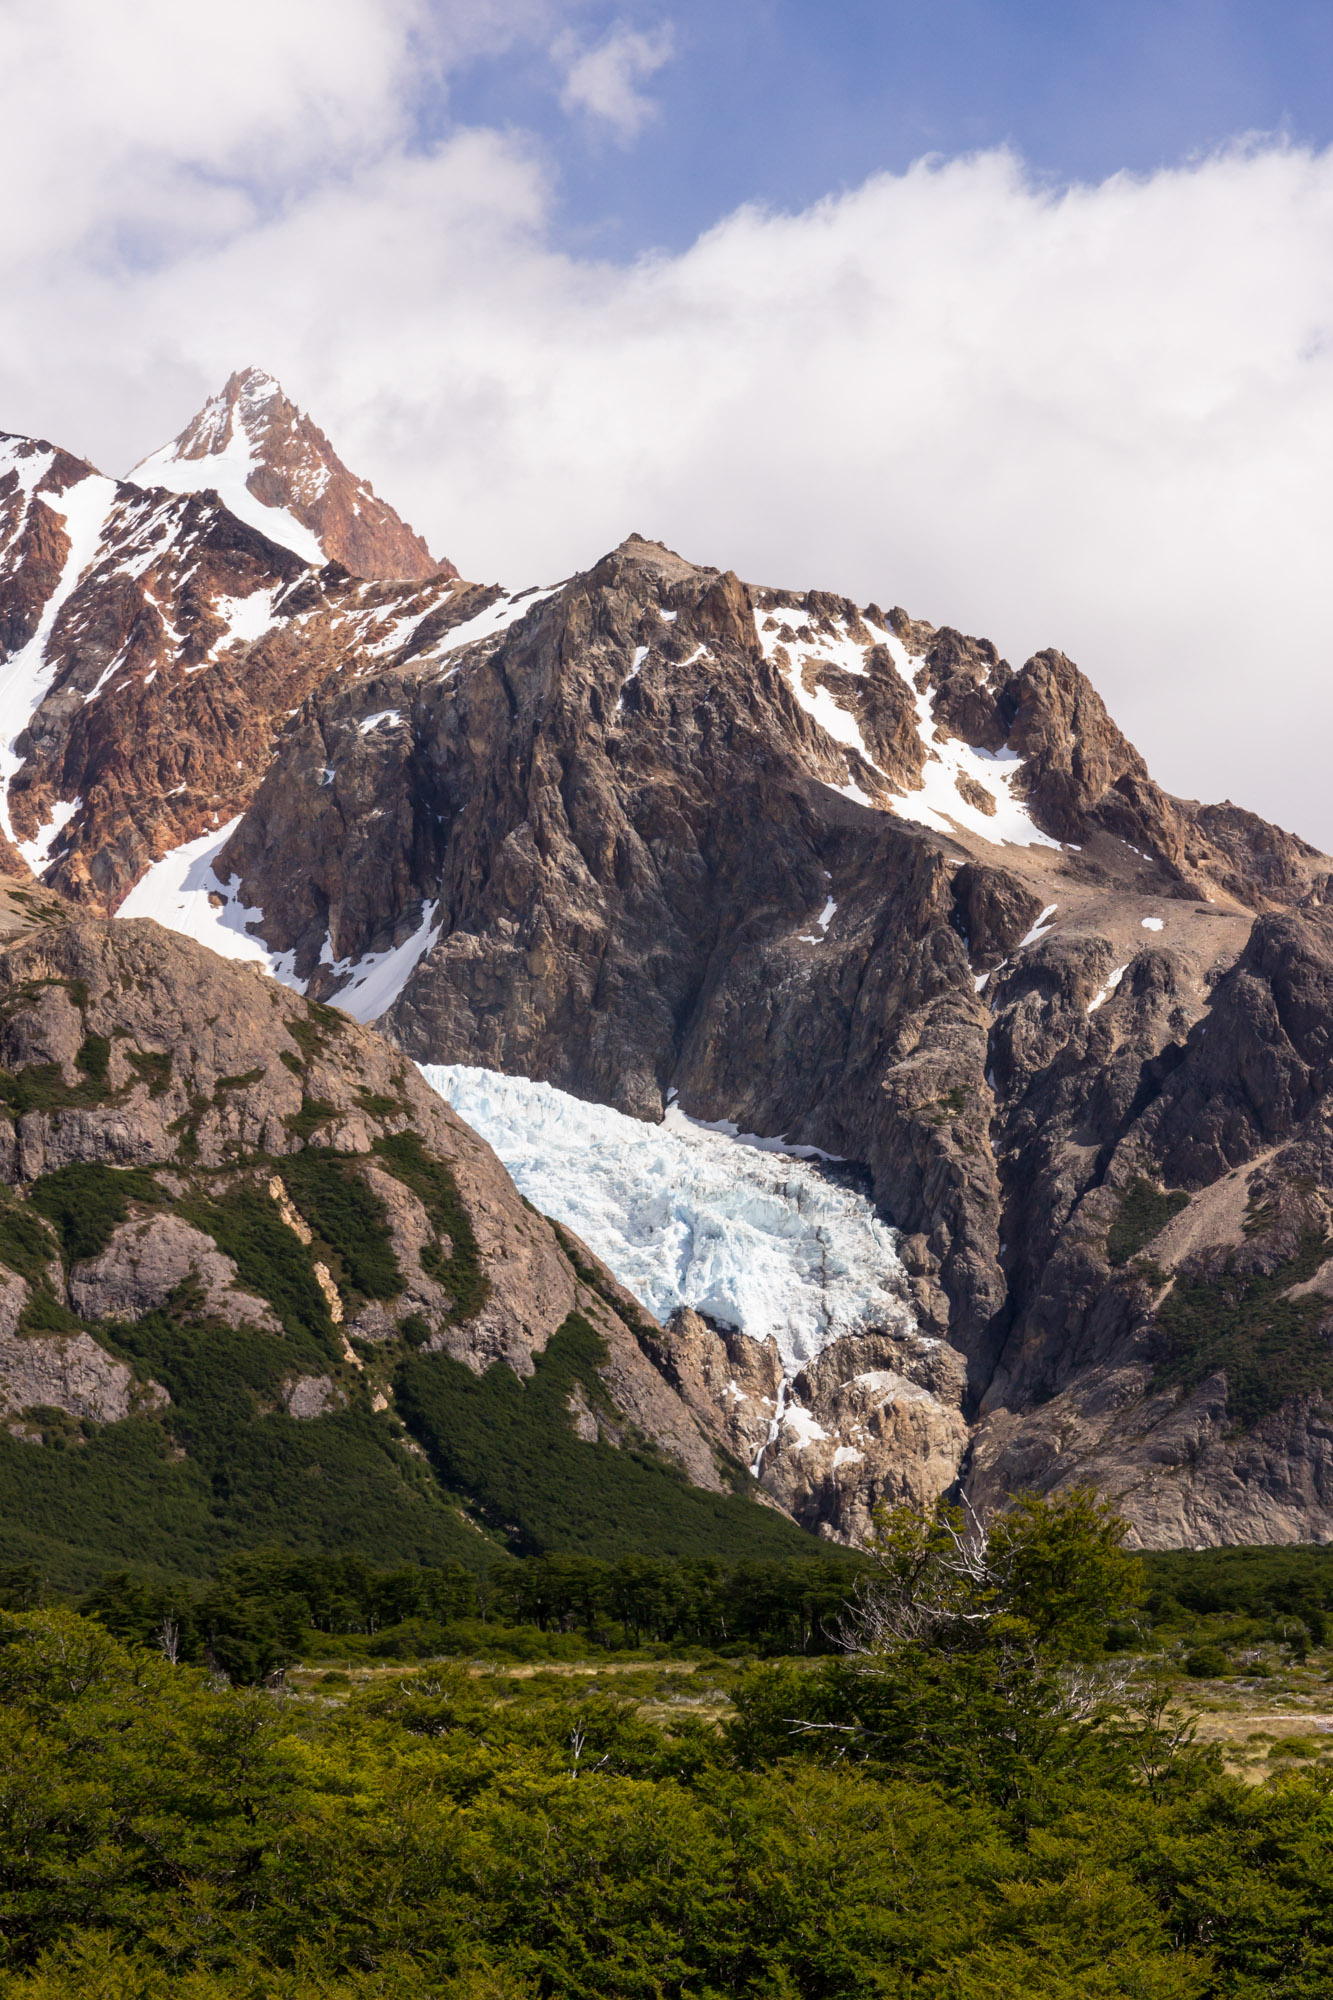 The snout of Glacier Piedras Blancas hangs above the Rio Blanco valley